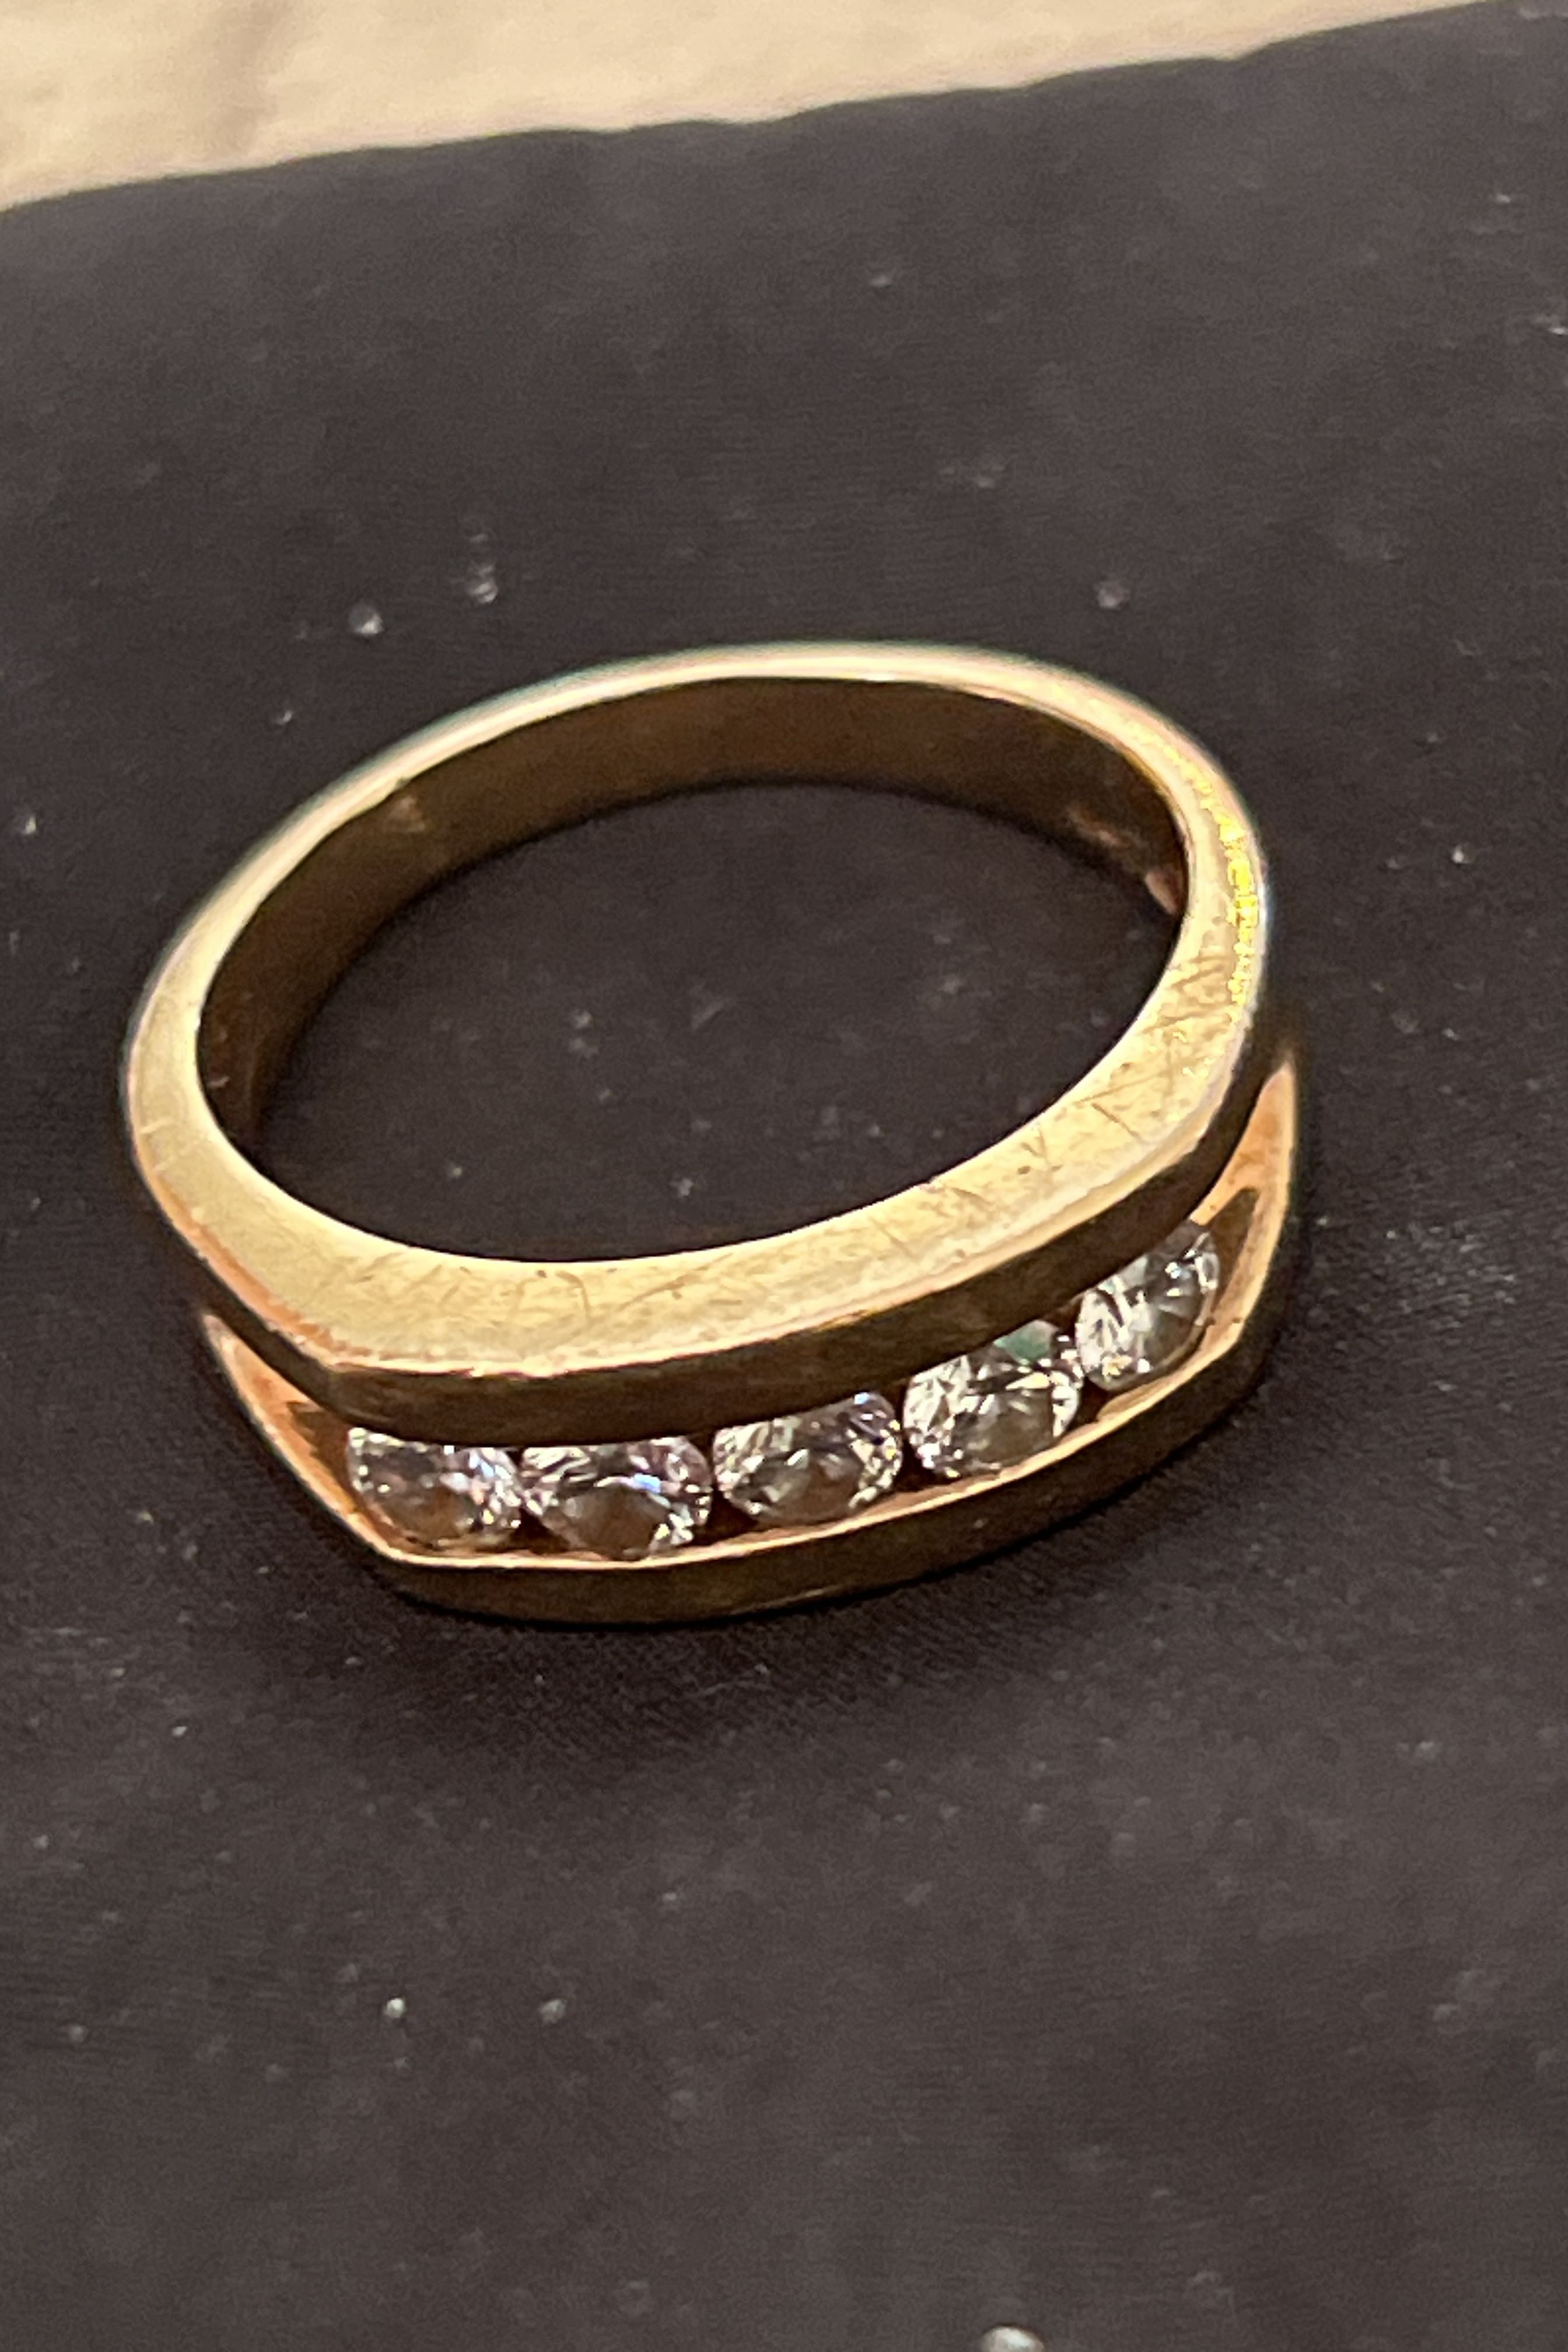 Branch (3) 18 karat gold ring, weight 6.75 grams - مصاغات الأربش للذهب  بالسعودية قسم المتجر الإلكتروني